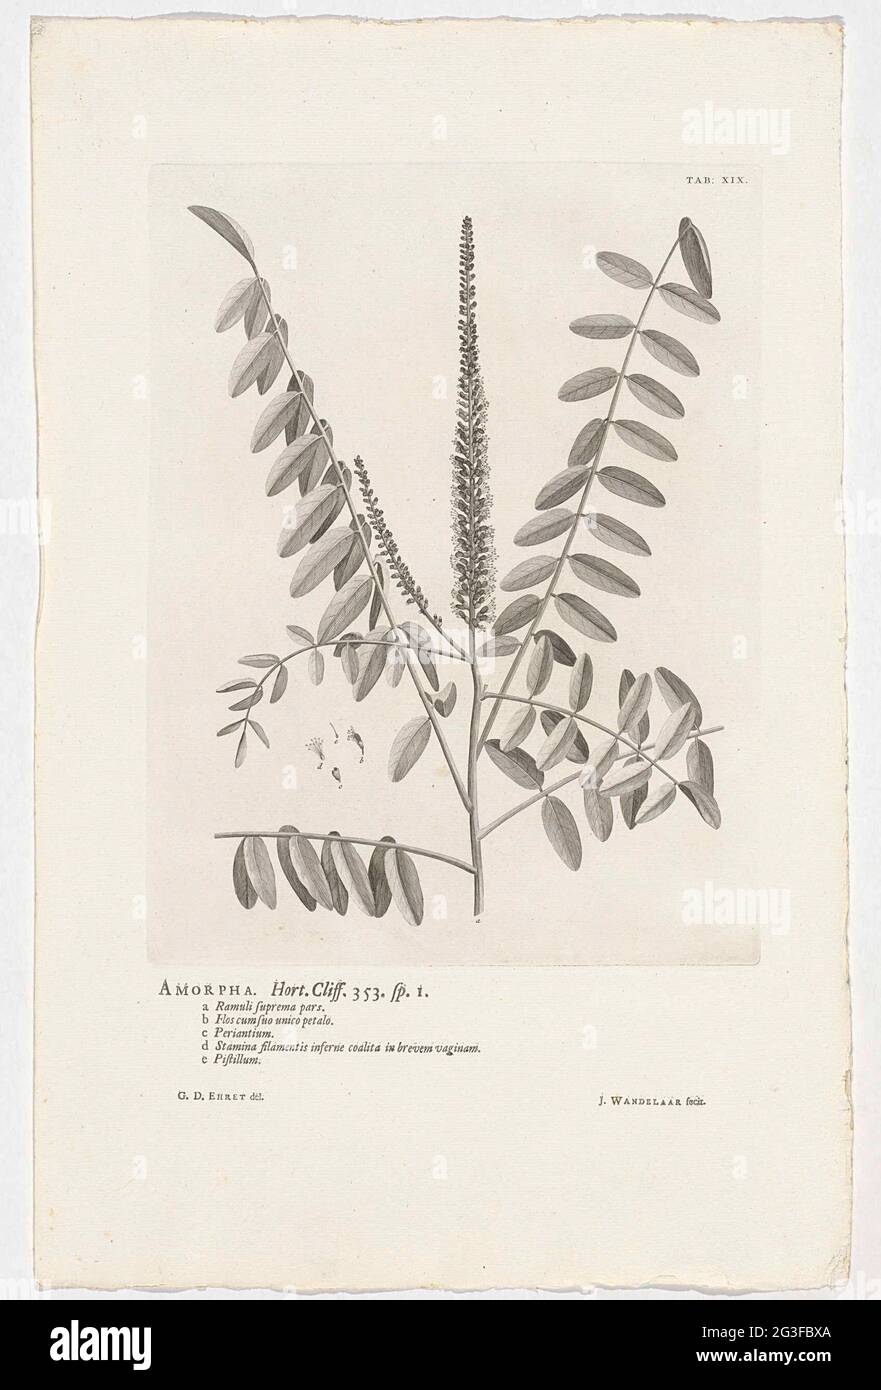 Amorpha Fruticosa; Amorpha. Hort. Klippe. 353. Sp. 1. Oben rechts mit der Bezeichnung: Tab: XIX. Stockfoto